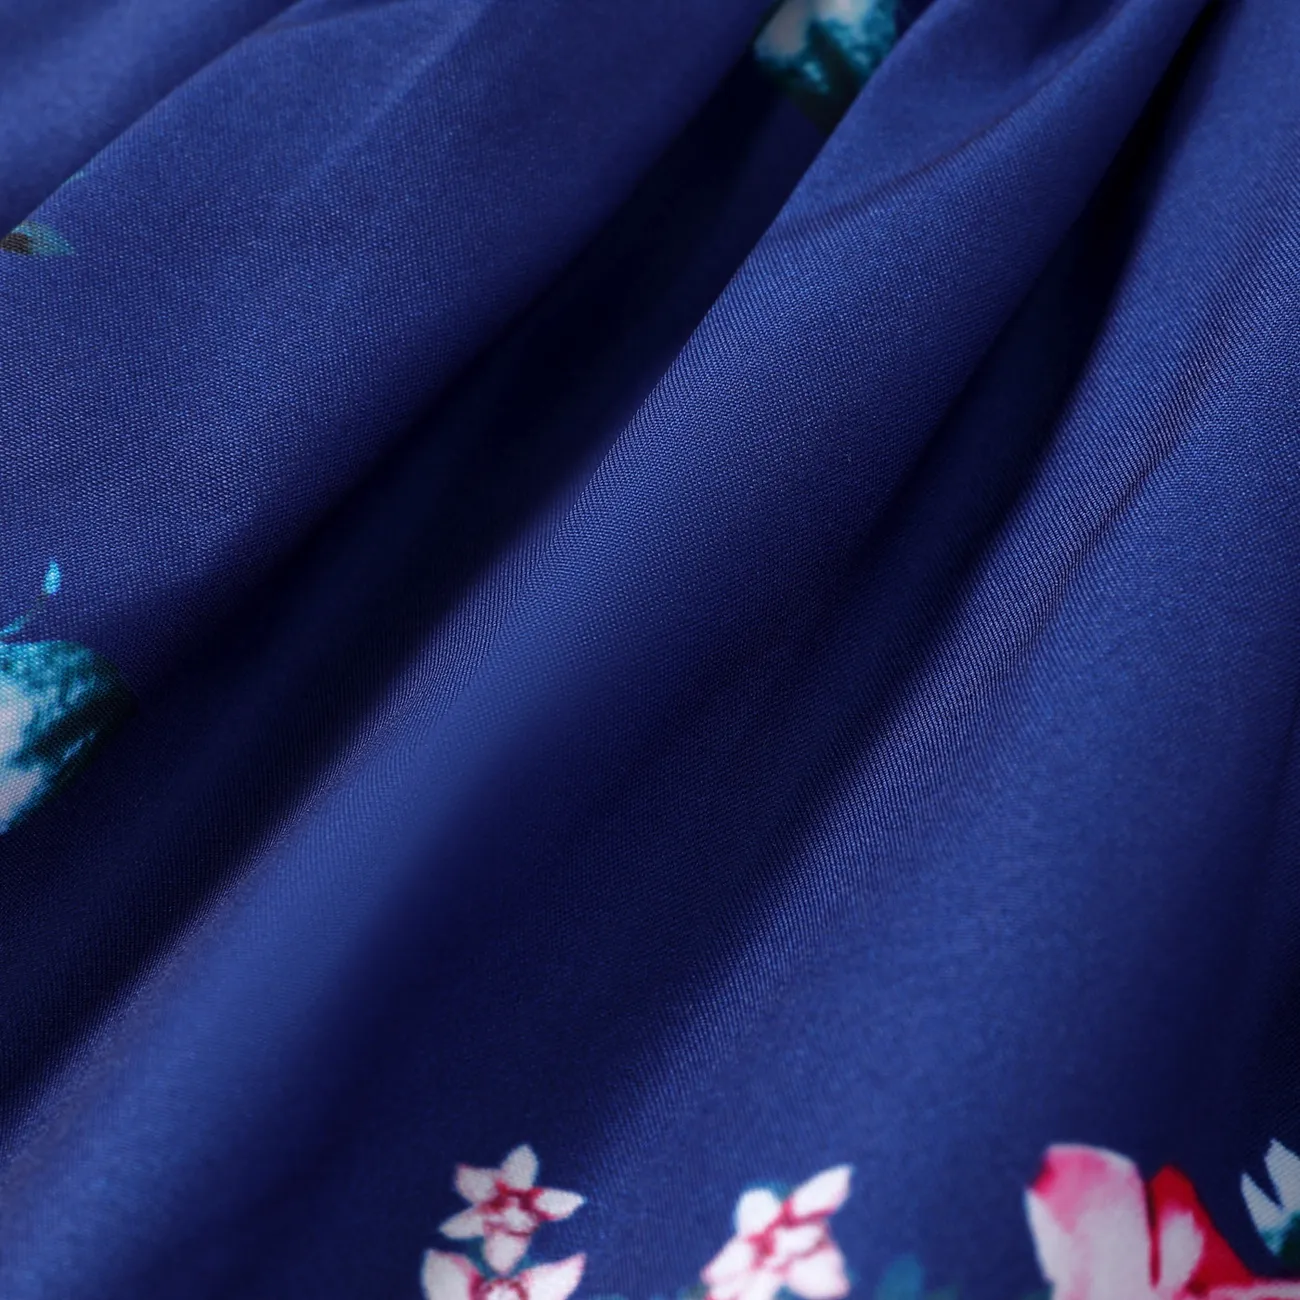 2 قطع طفلة الأزهار طباعة الأزرق بلا أكمام السباغيتي فستان كشكش مع قبعة مجموعة أزرق big image 1